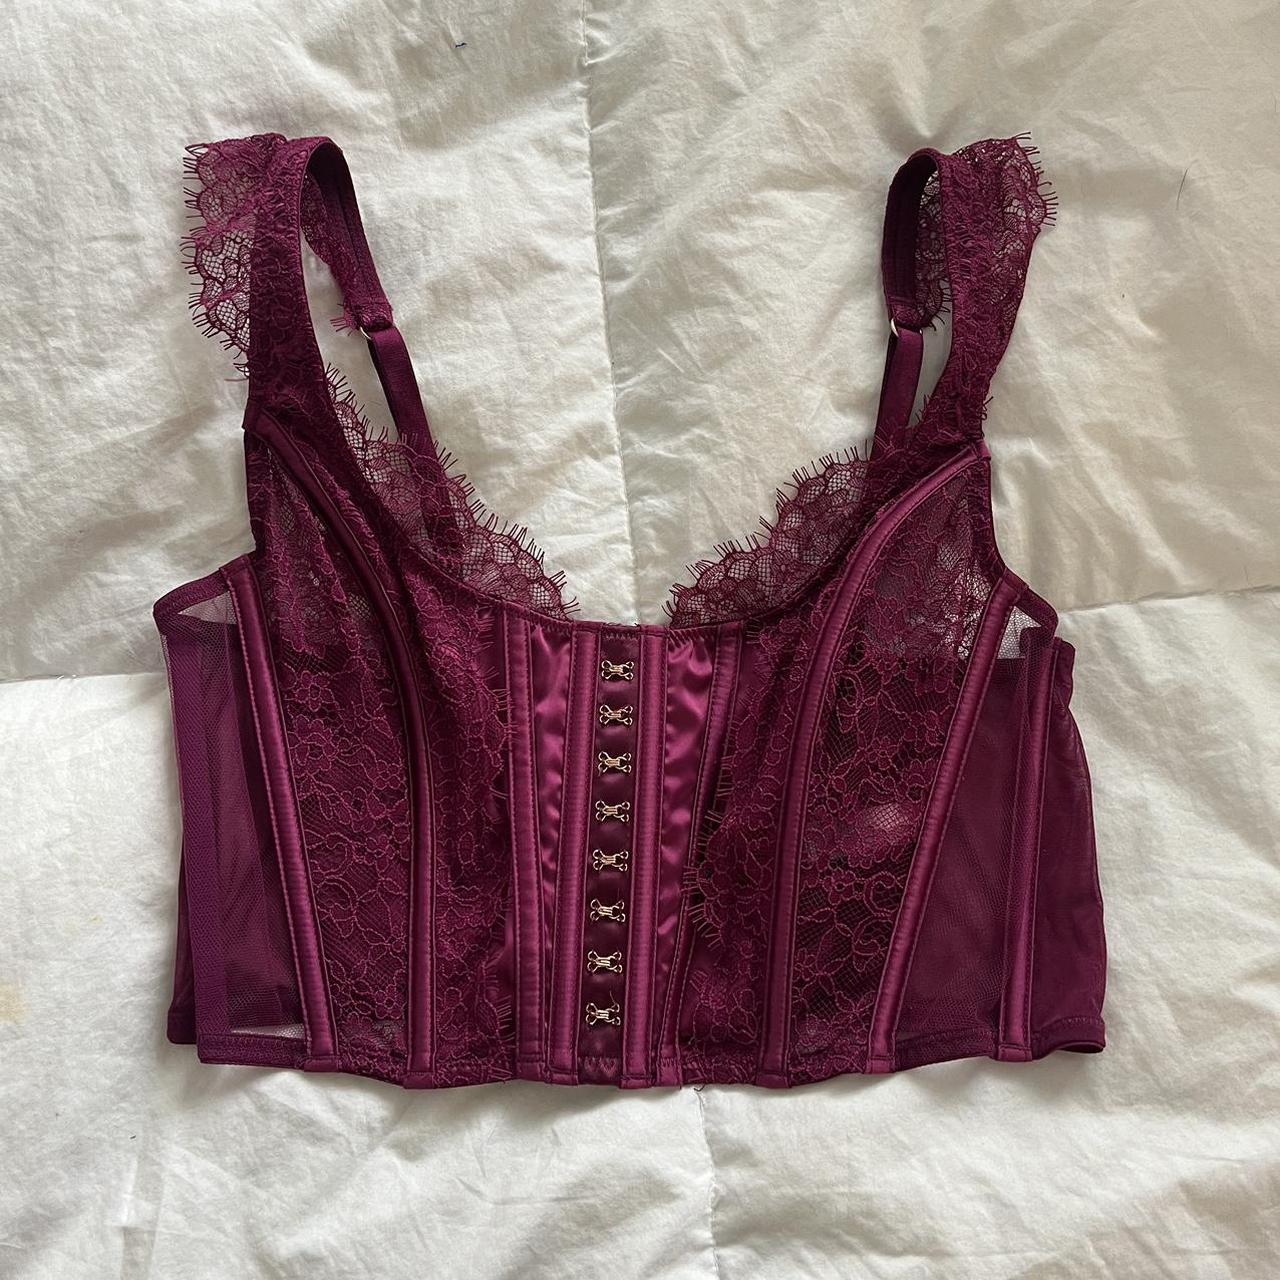 Victoria secret corset top in a pretty purple color! - Depop